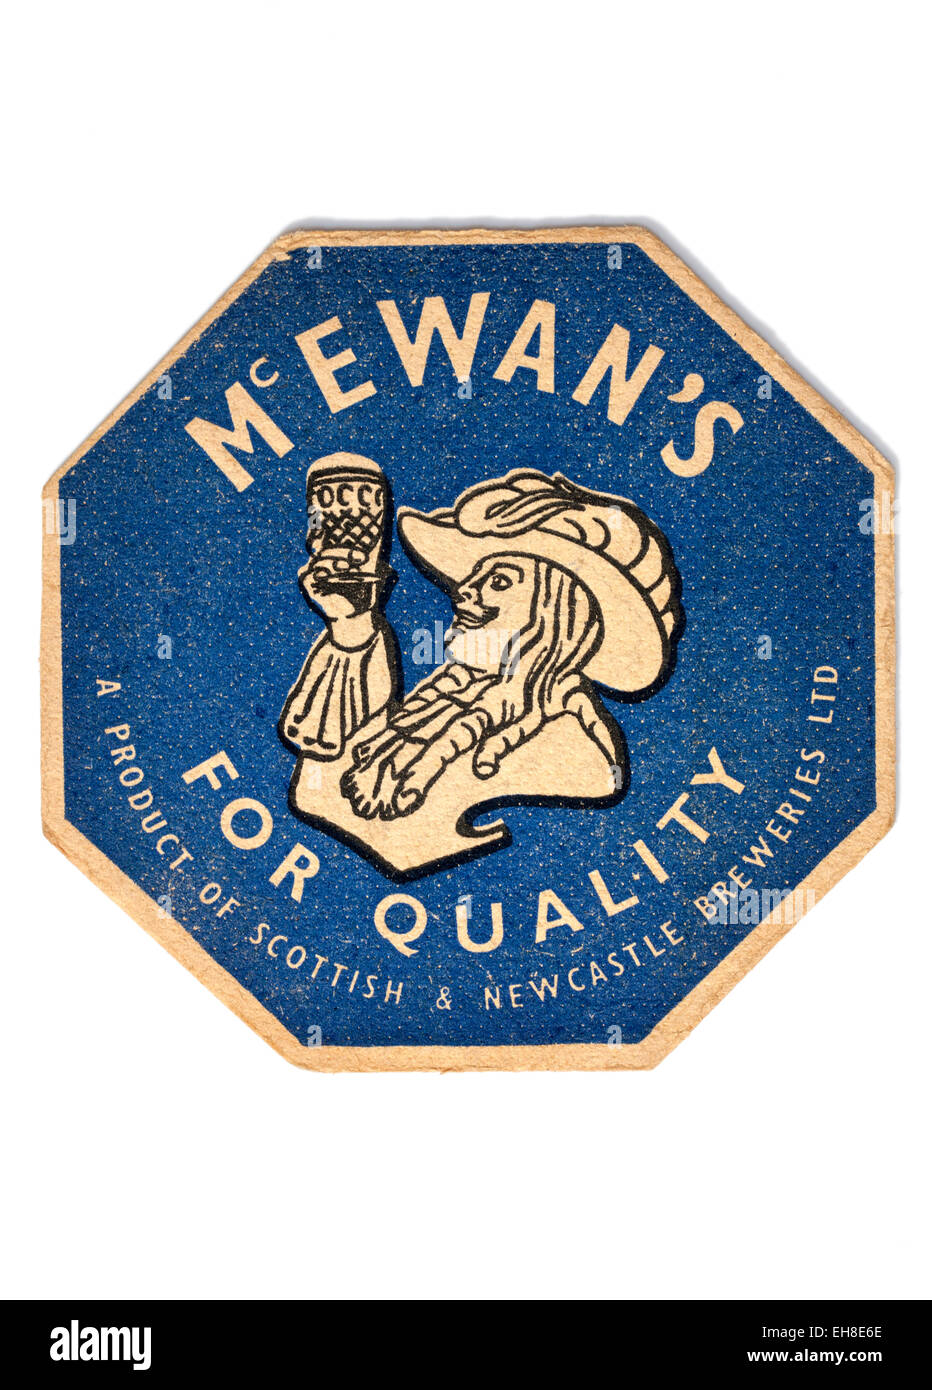 Vintage Beermat pubblicità birra Mcewans Foto Stock